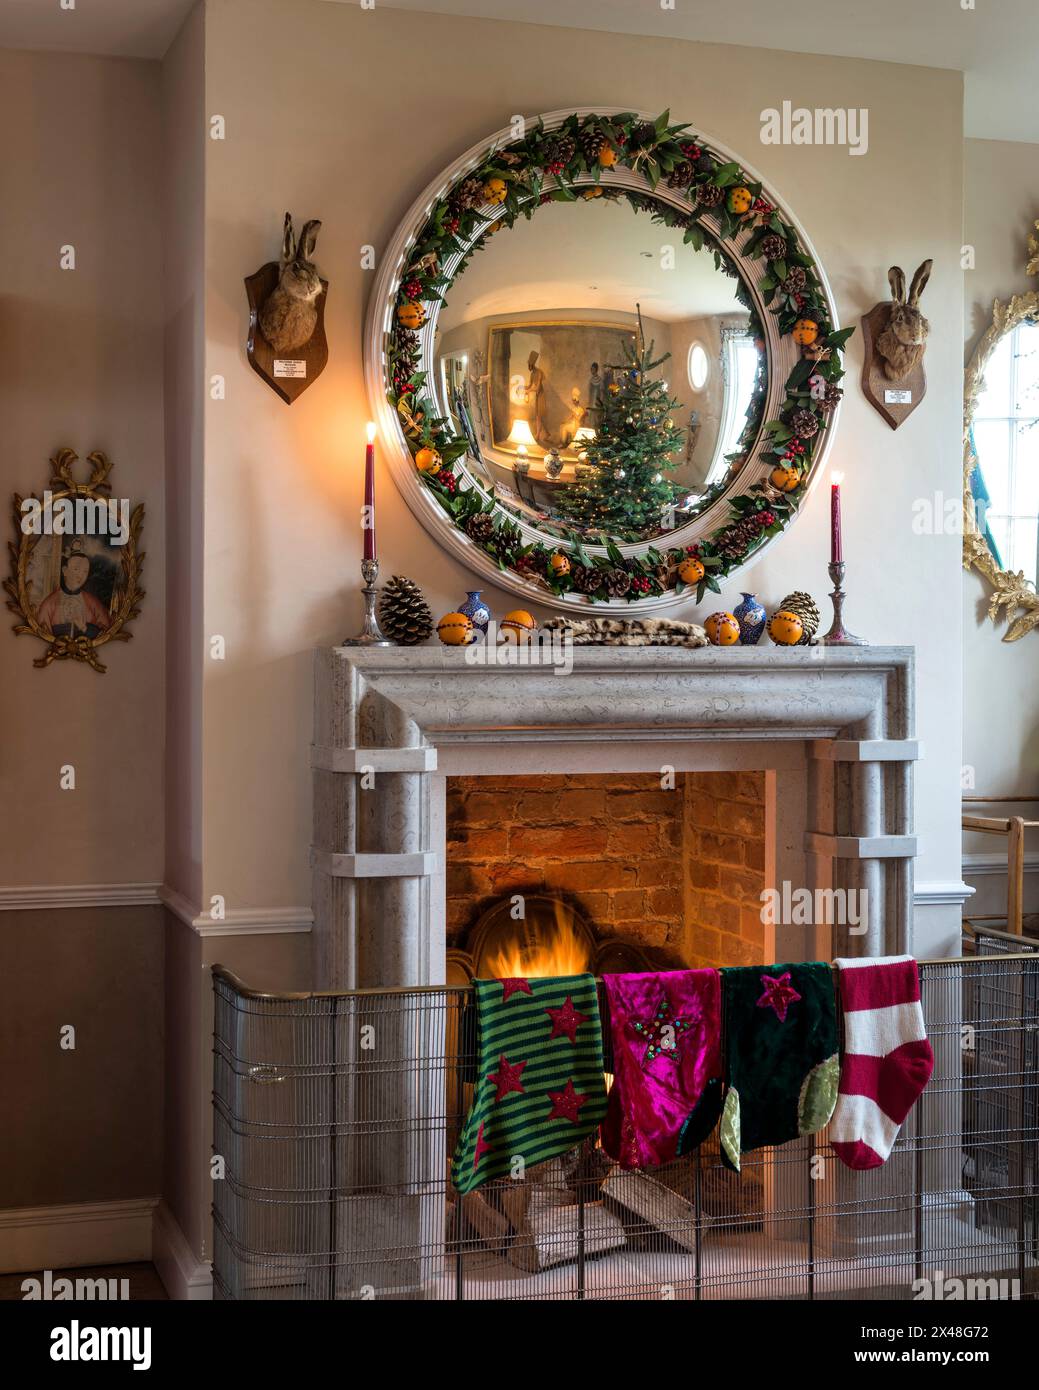 Bas de Noël accrochés sur le garde-feu dans la maison de la famille Dorset, Angleterre, Royaume-Uni Banque D'Images